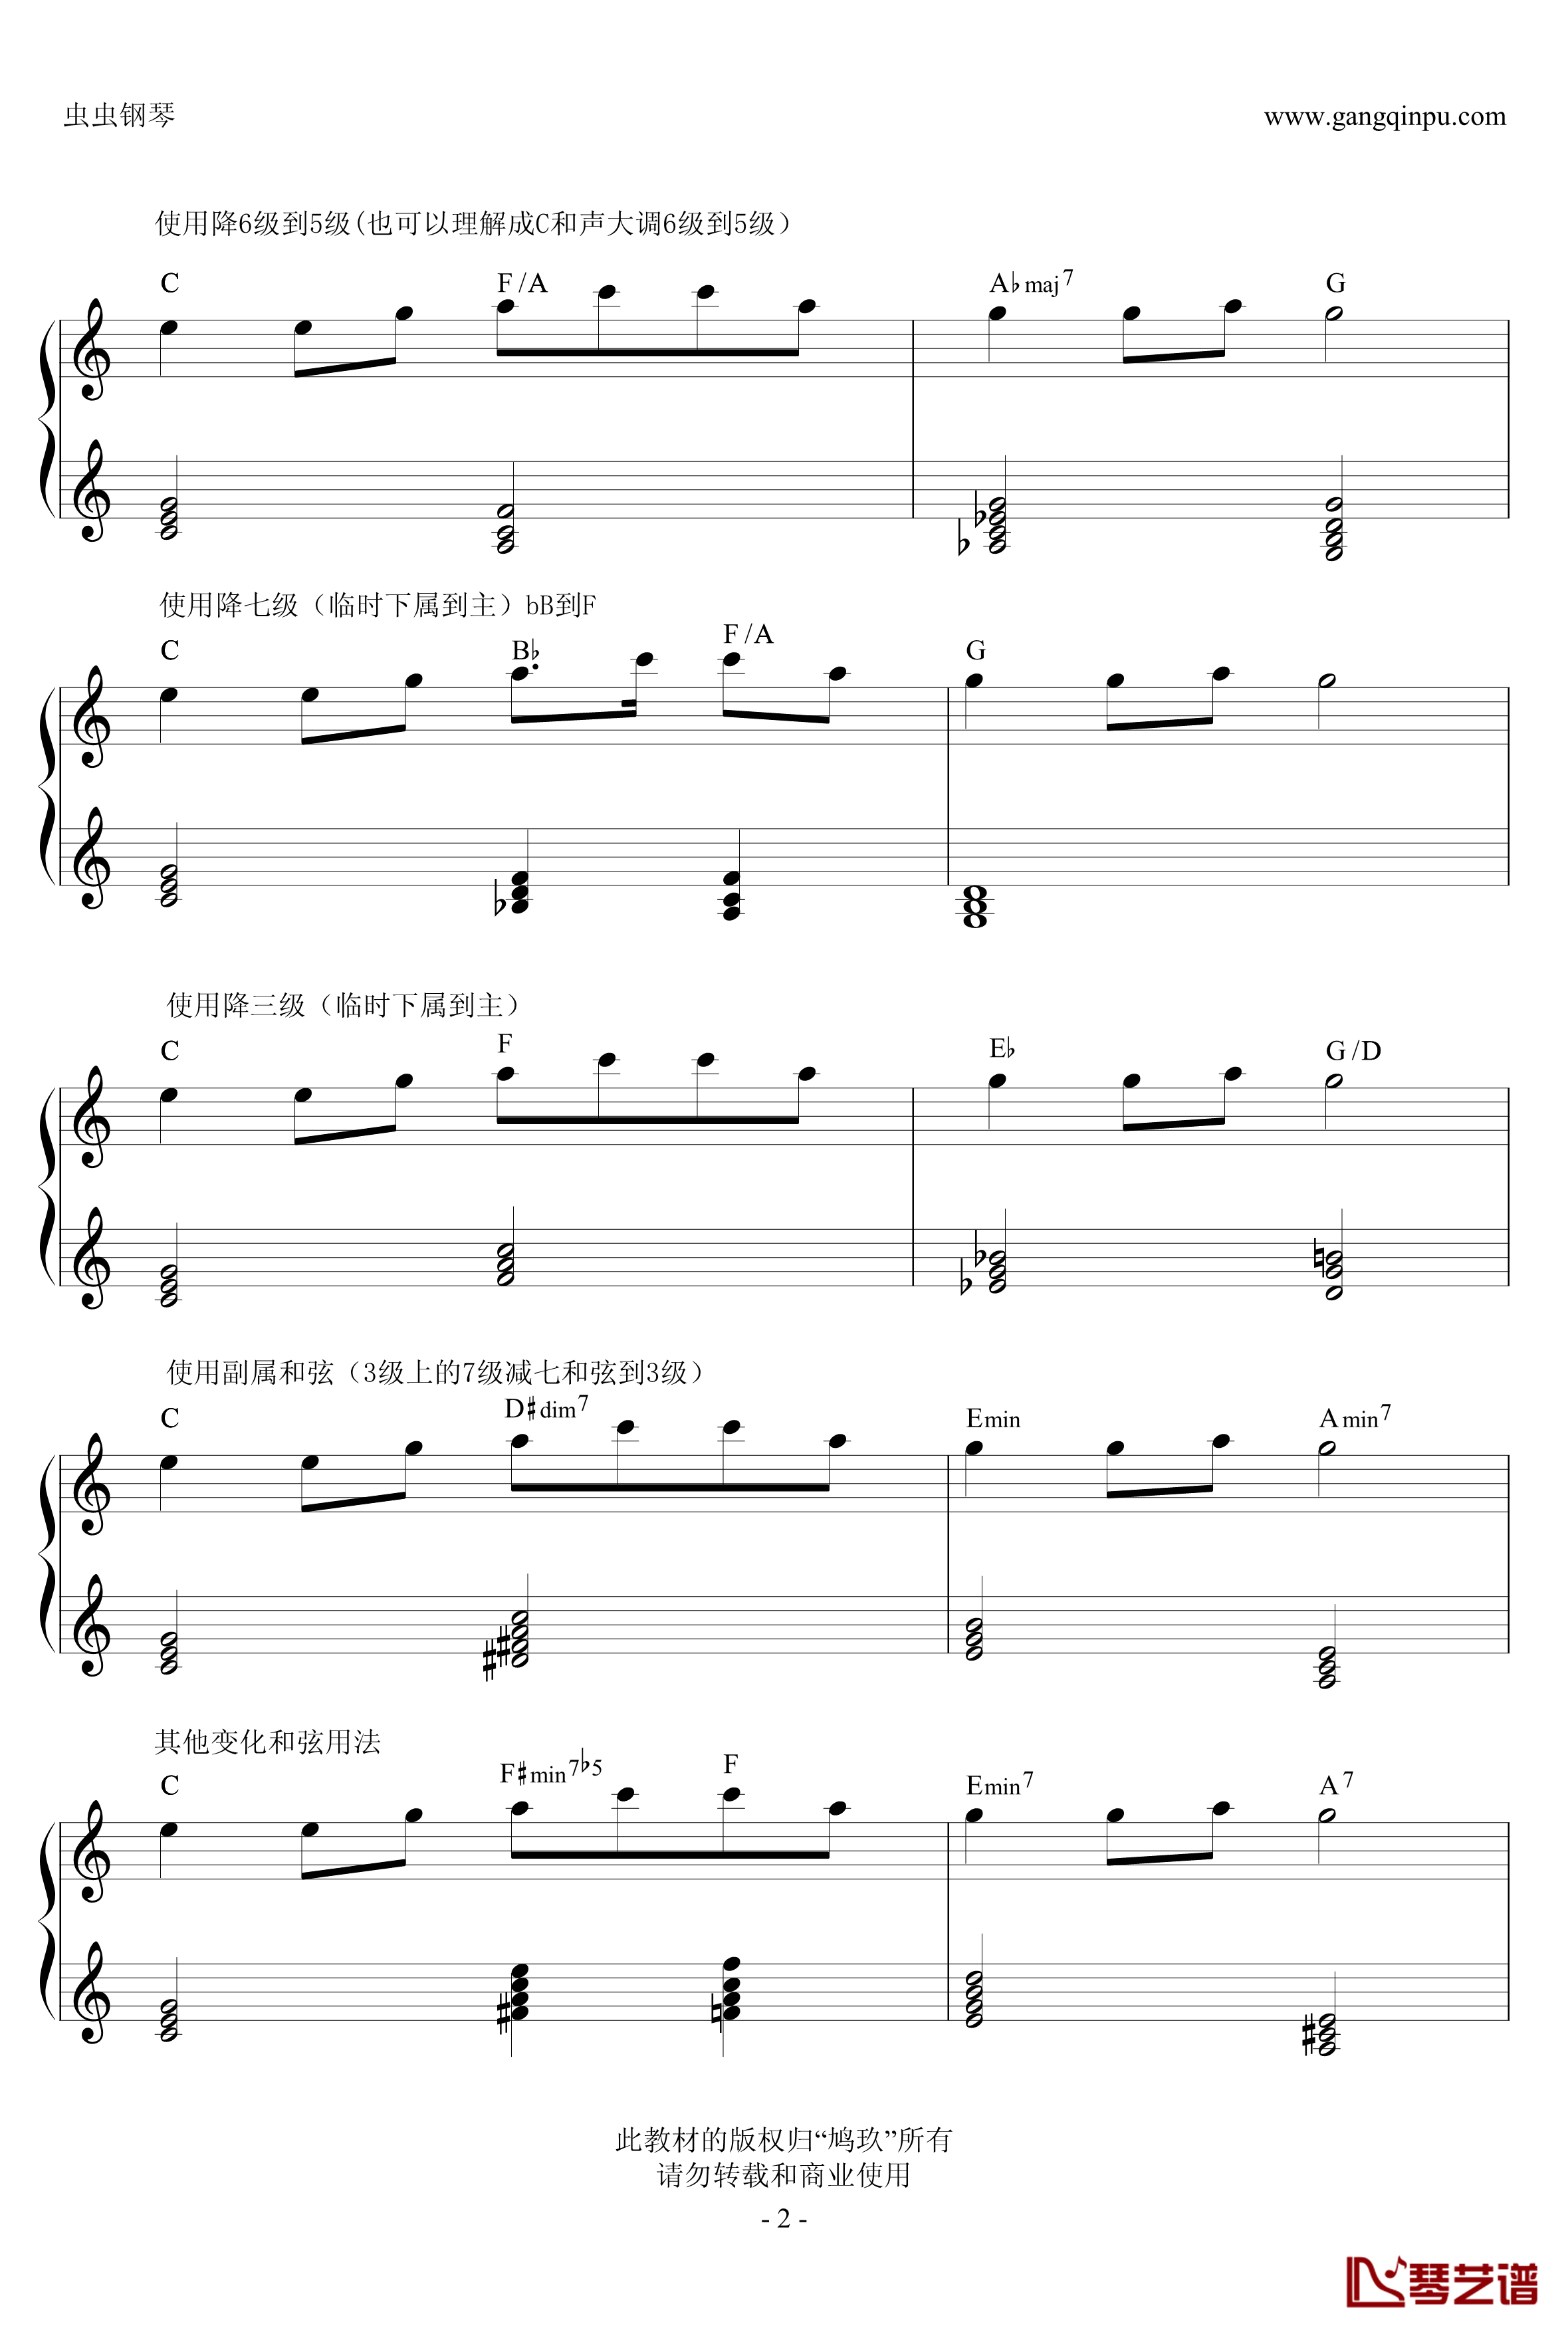 超实用即兴伴奏教材2钢琴谱-变化和弦-鸠玖2